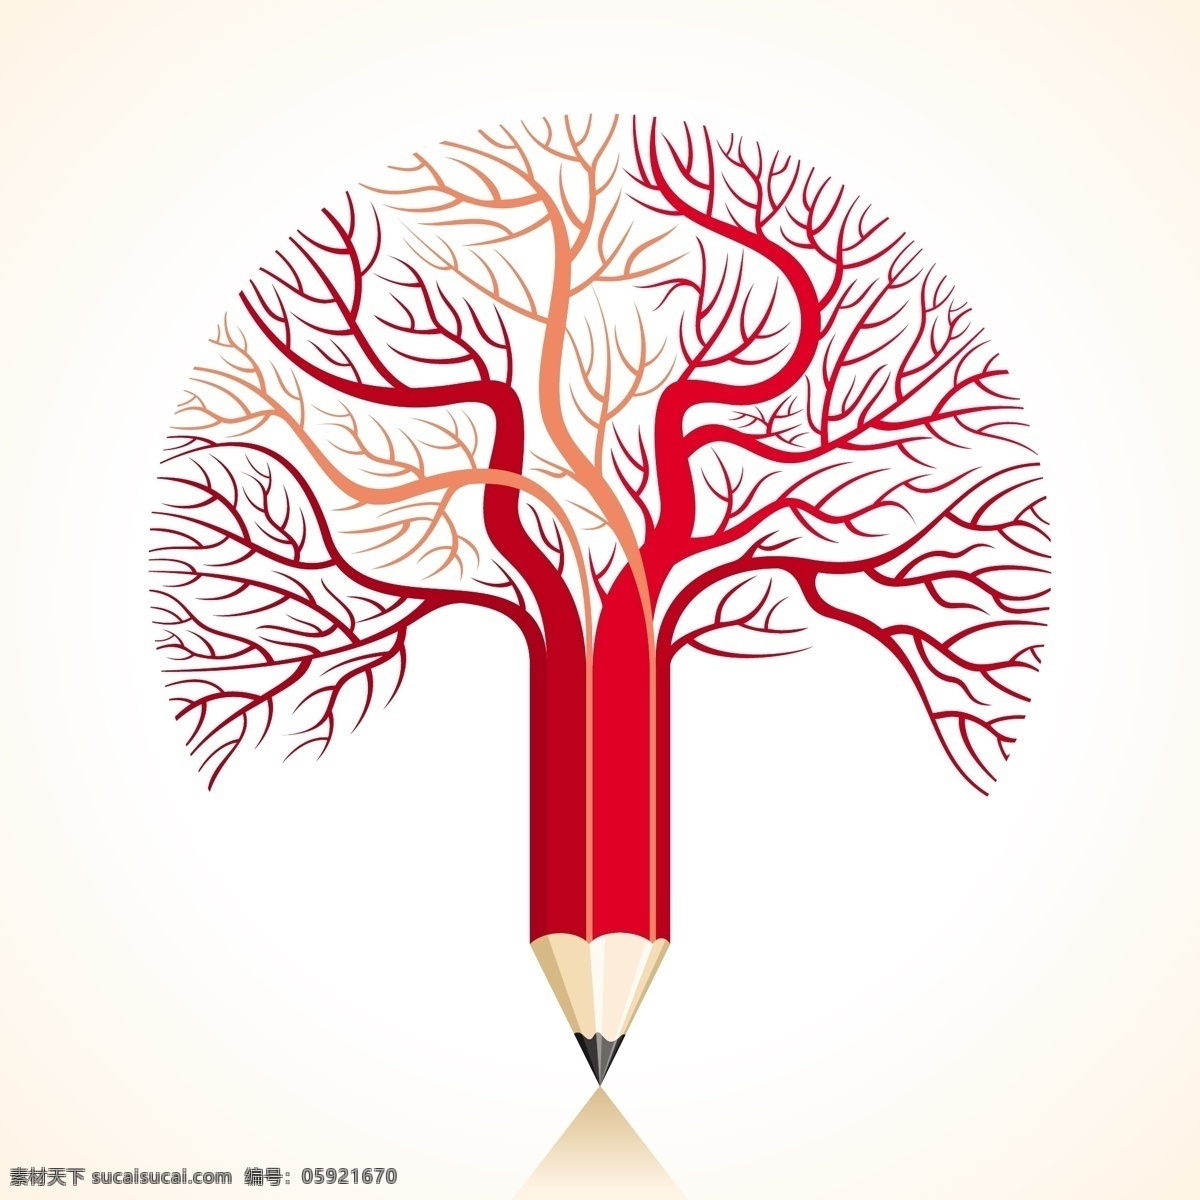 铅笔树木 铅笔 卡通树 抽象树 创新思维 创意logo 生活百科 矢量素材 白色